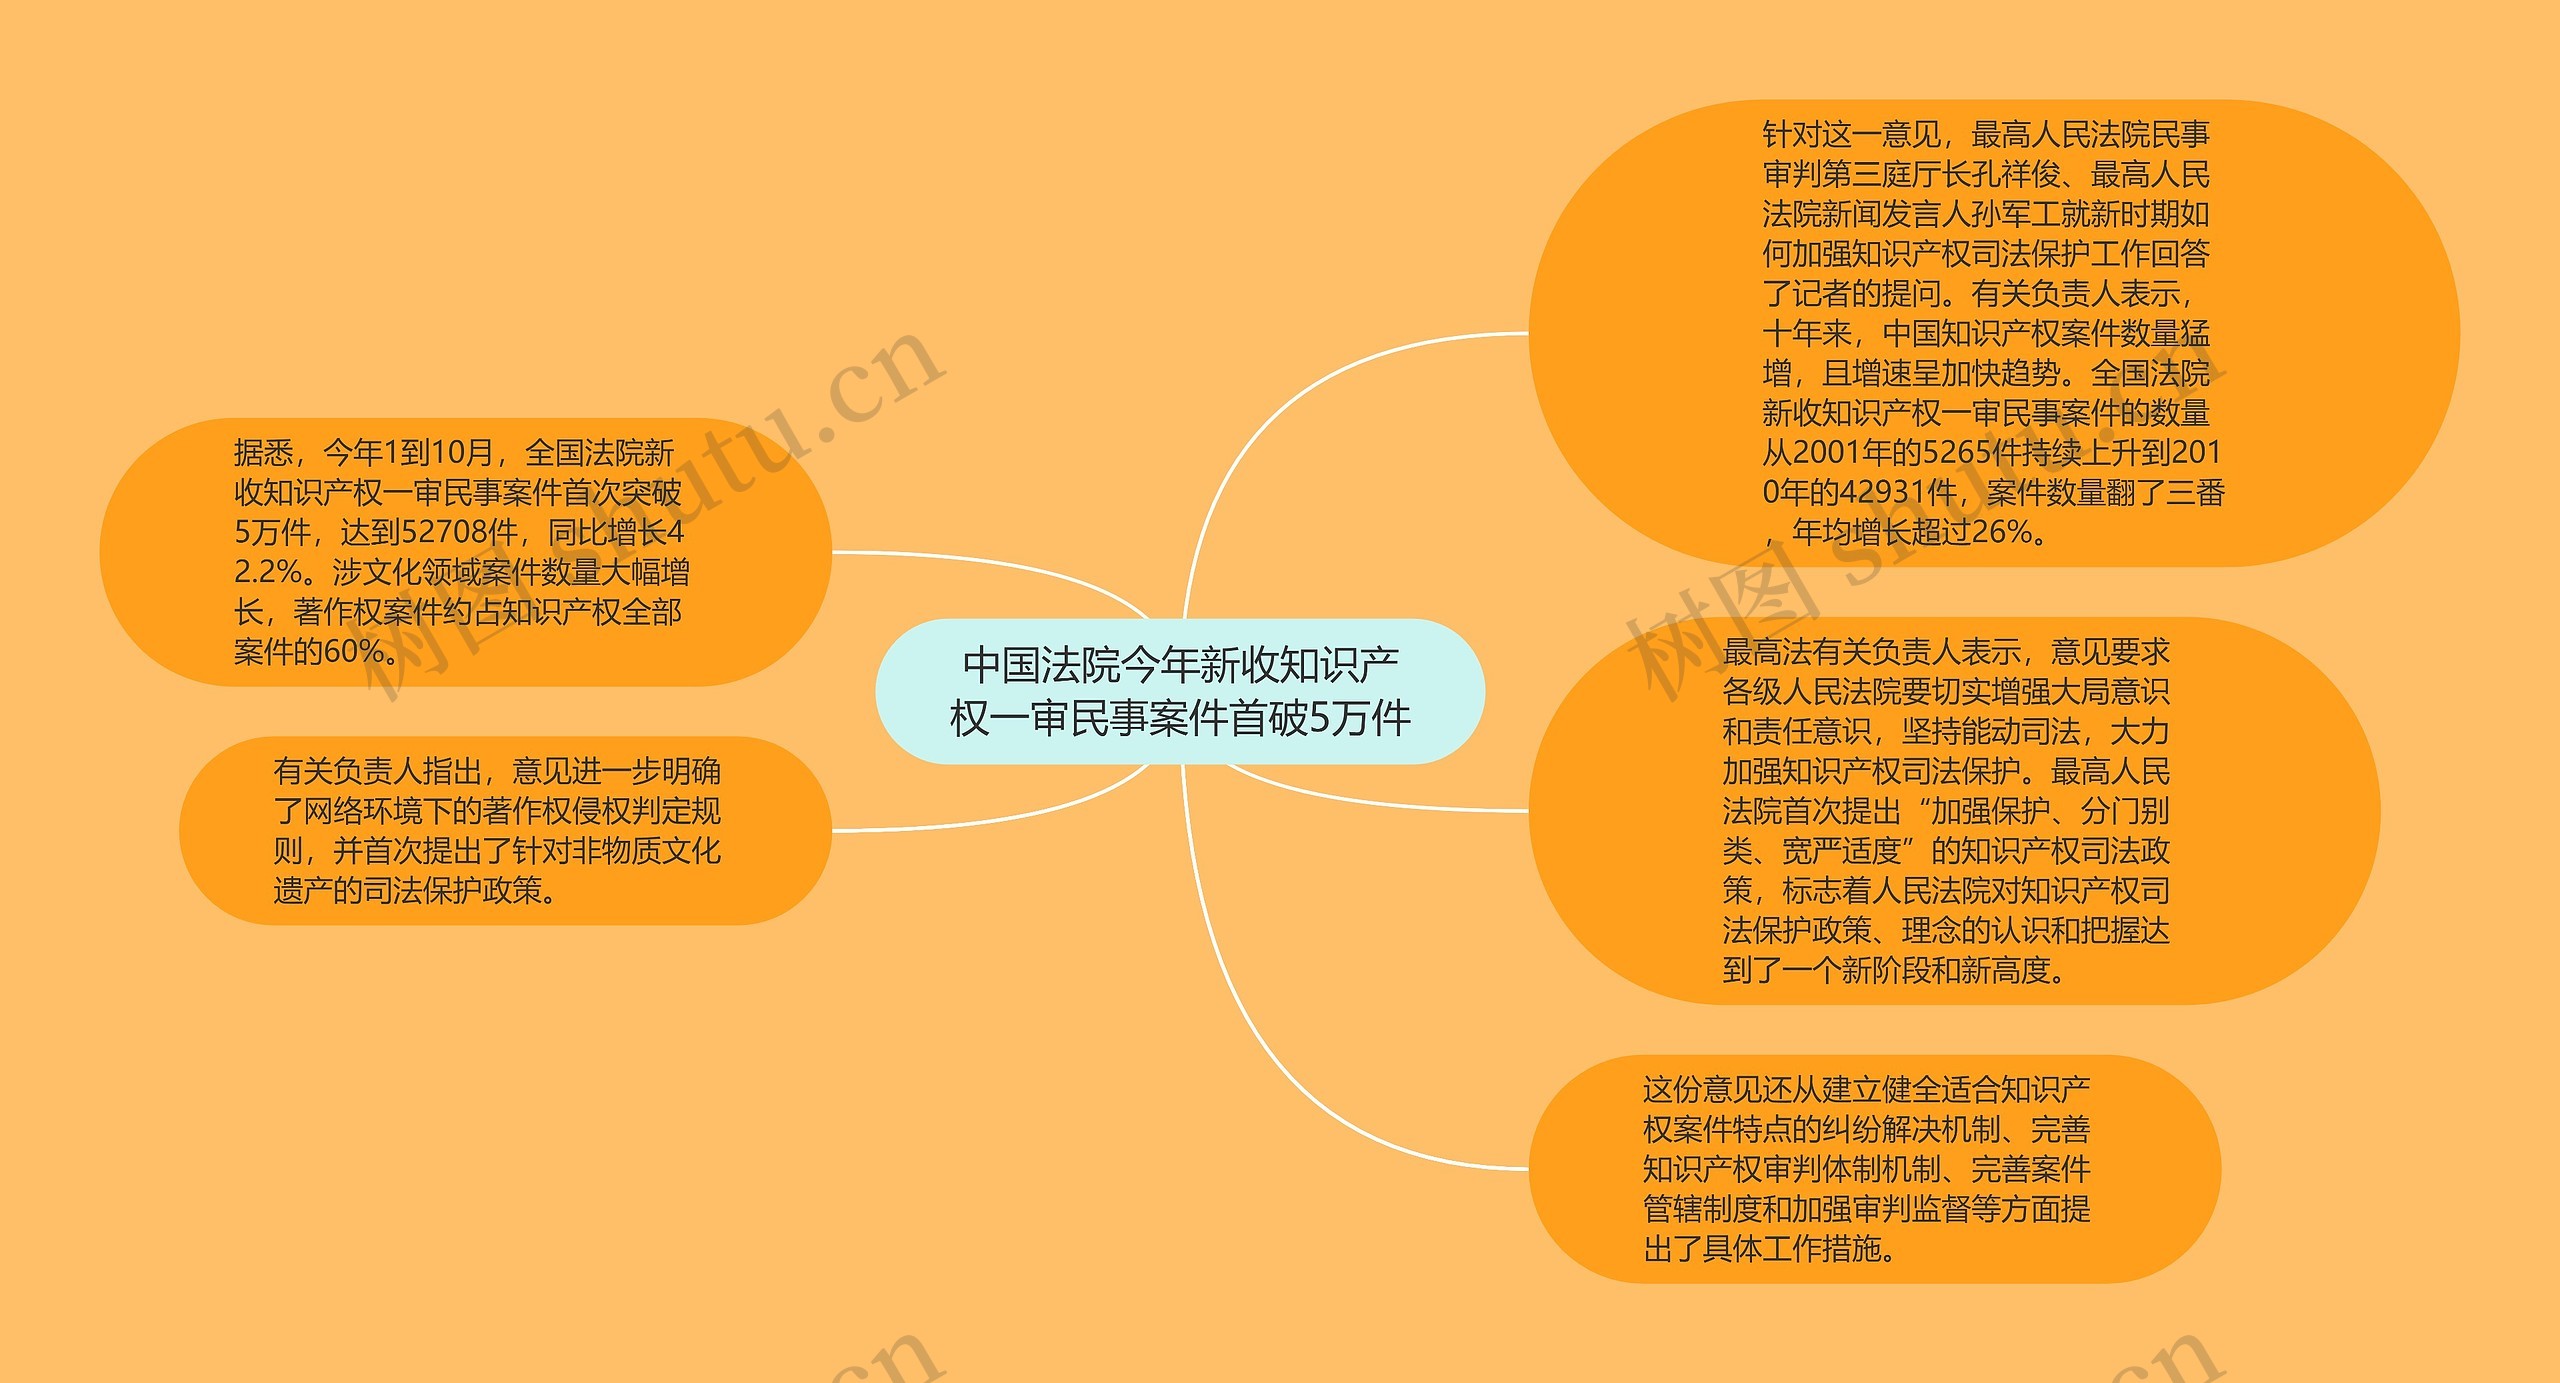 中国法院今年新收知识产权一审民事案件首破5万件思维导图